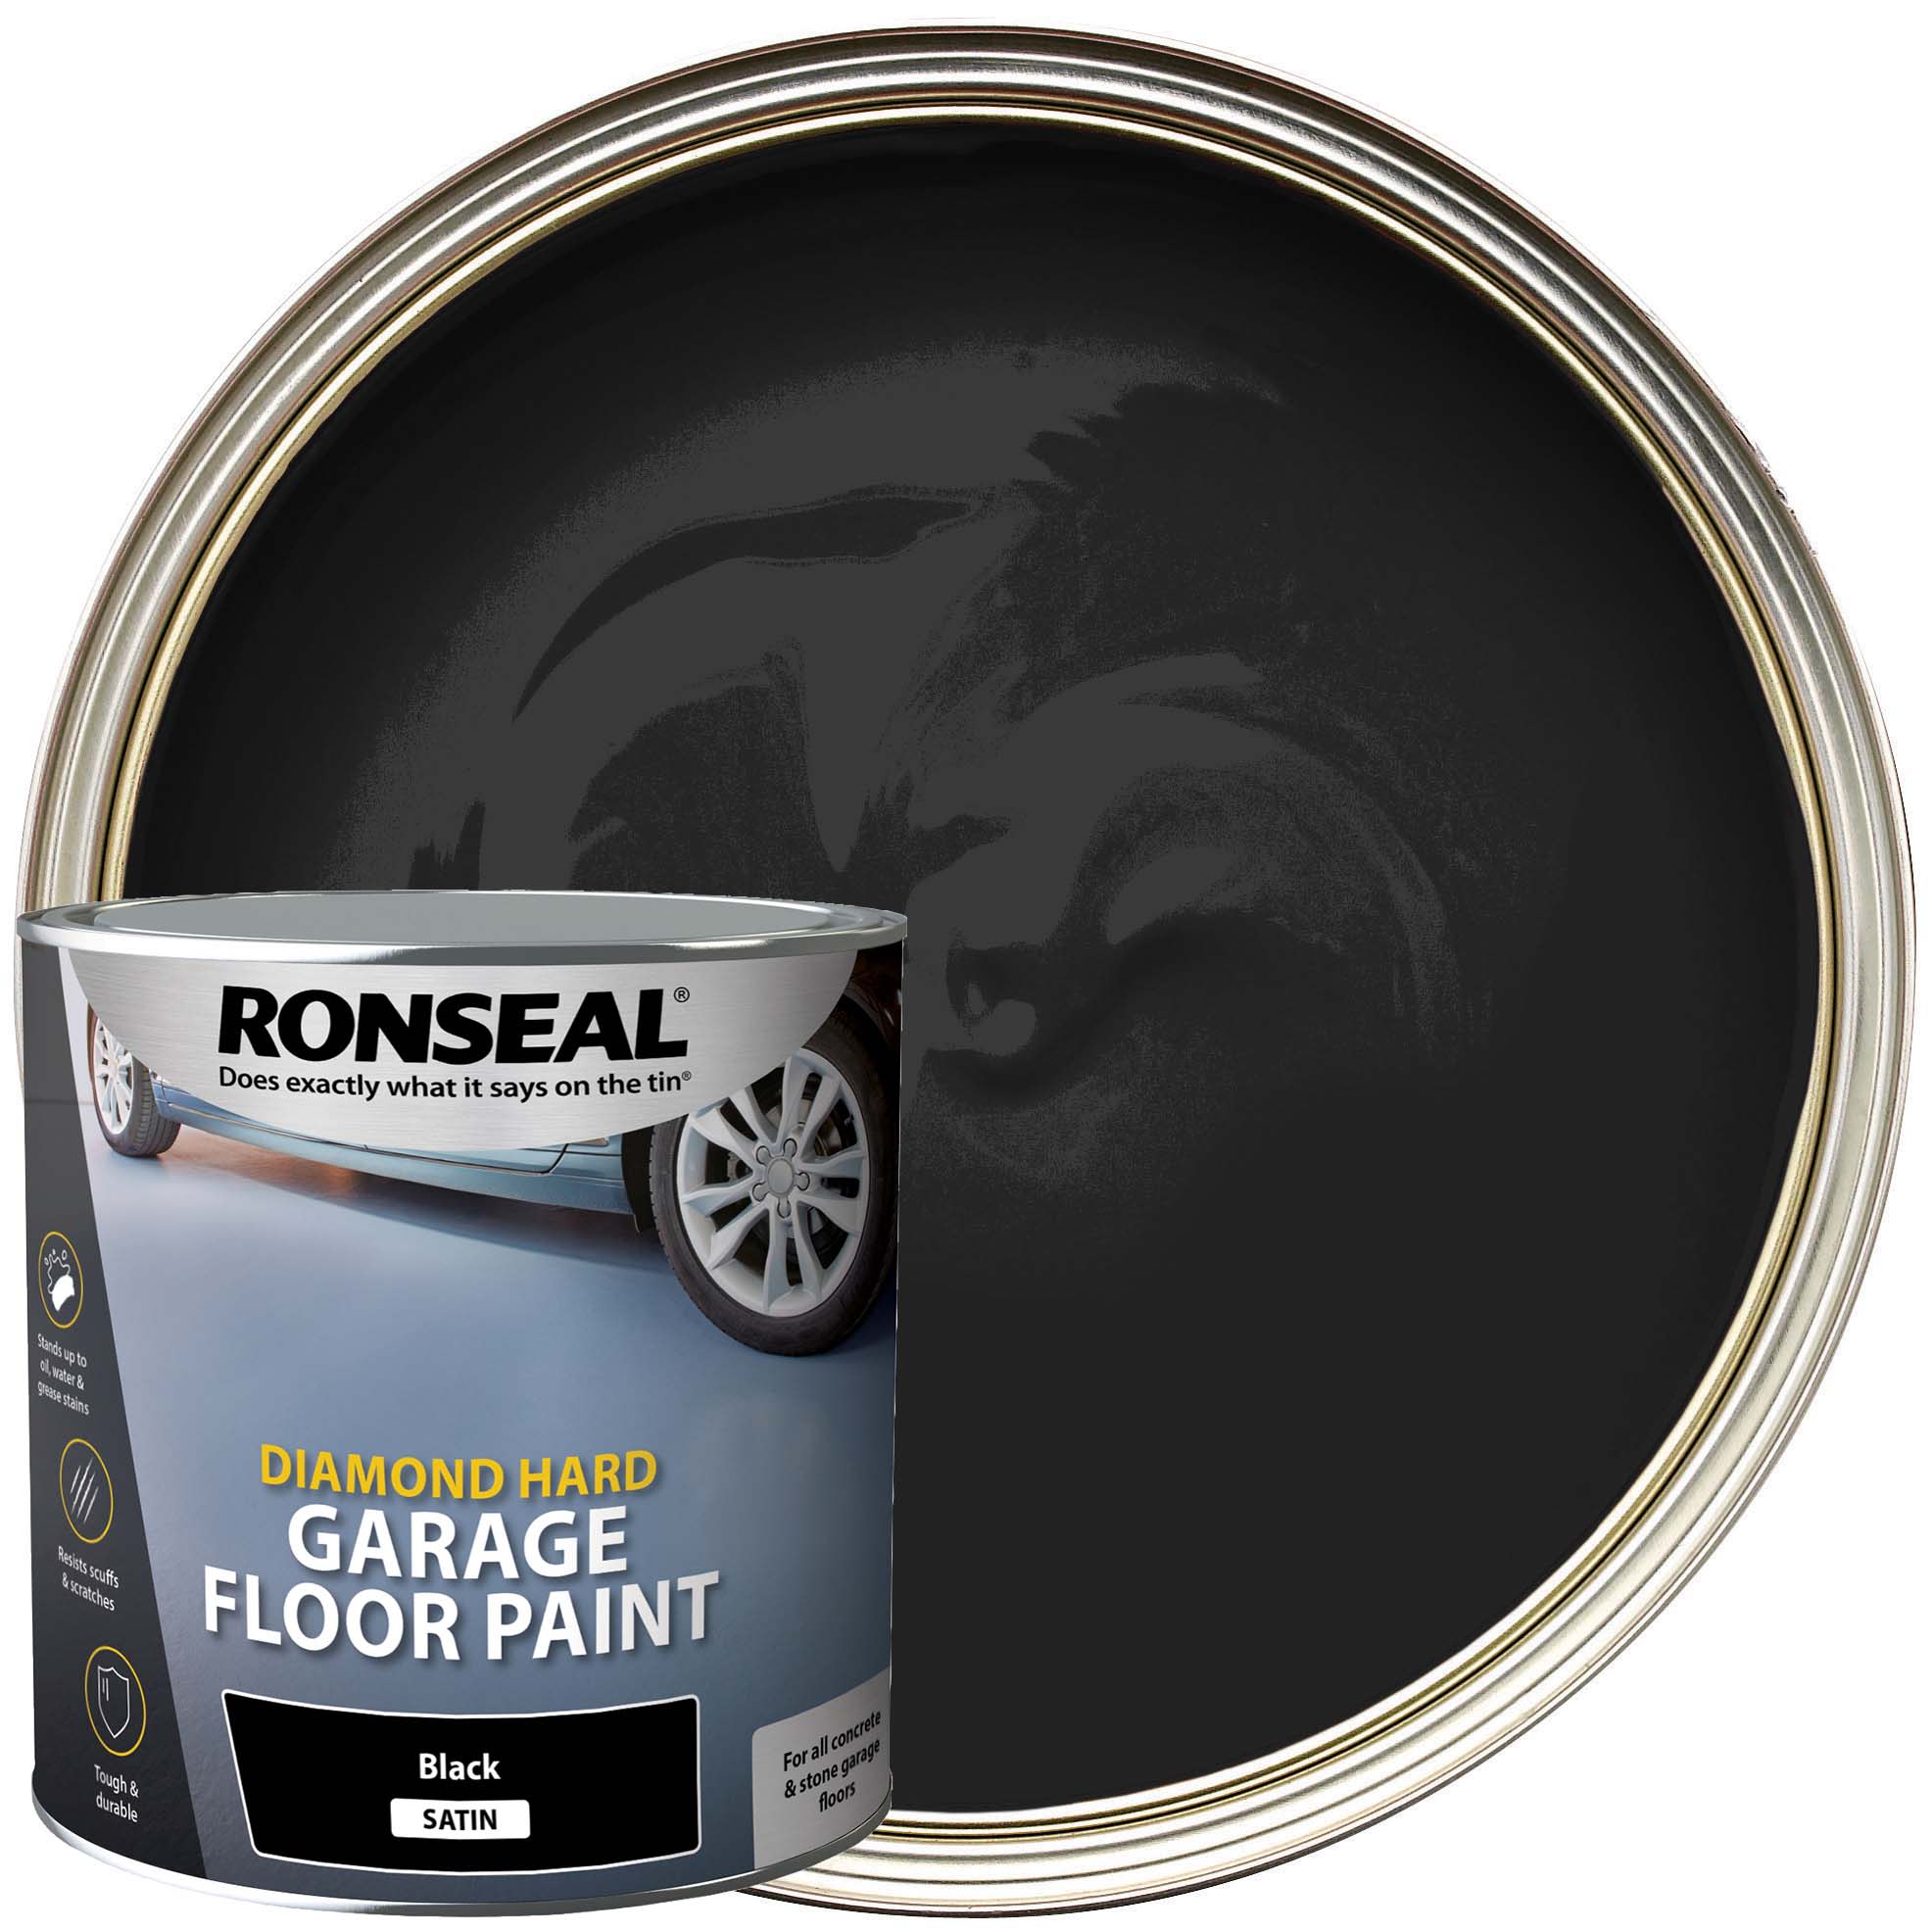 Ronseal Diamond Hard Garage Floor Paint - Satin